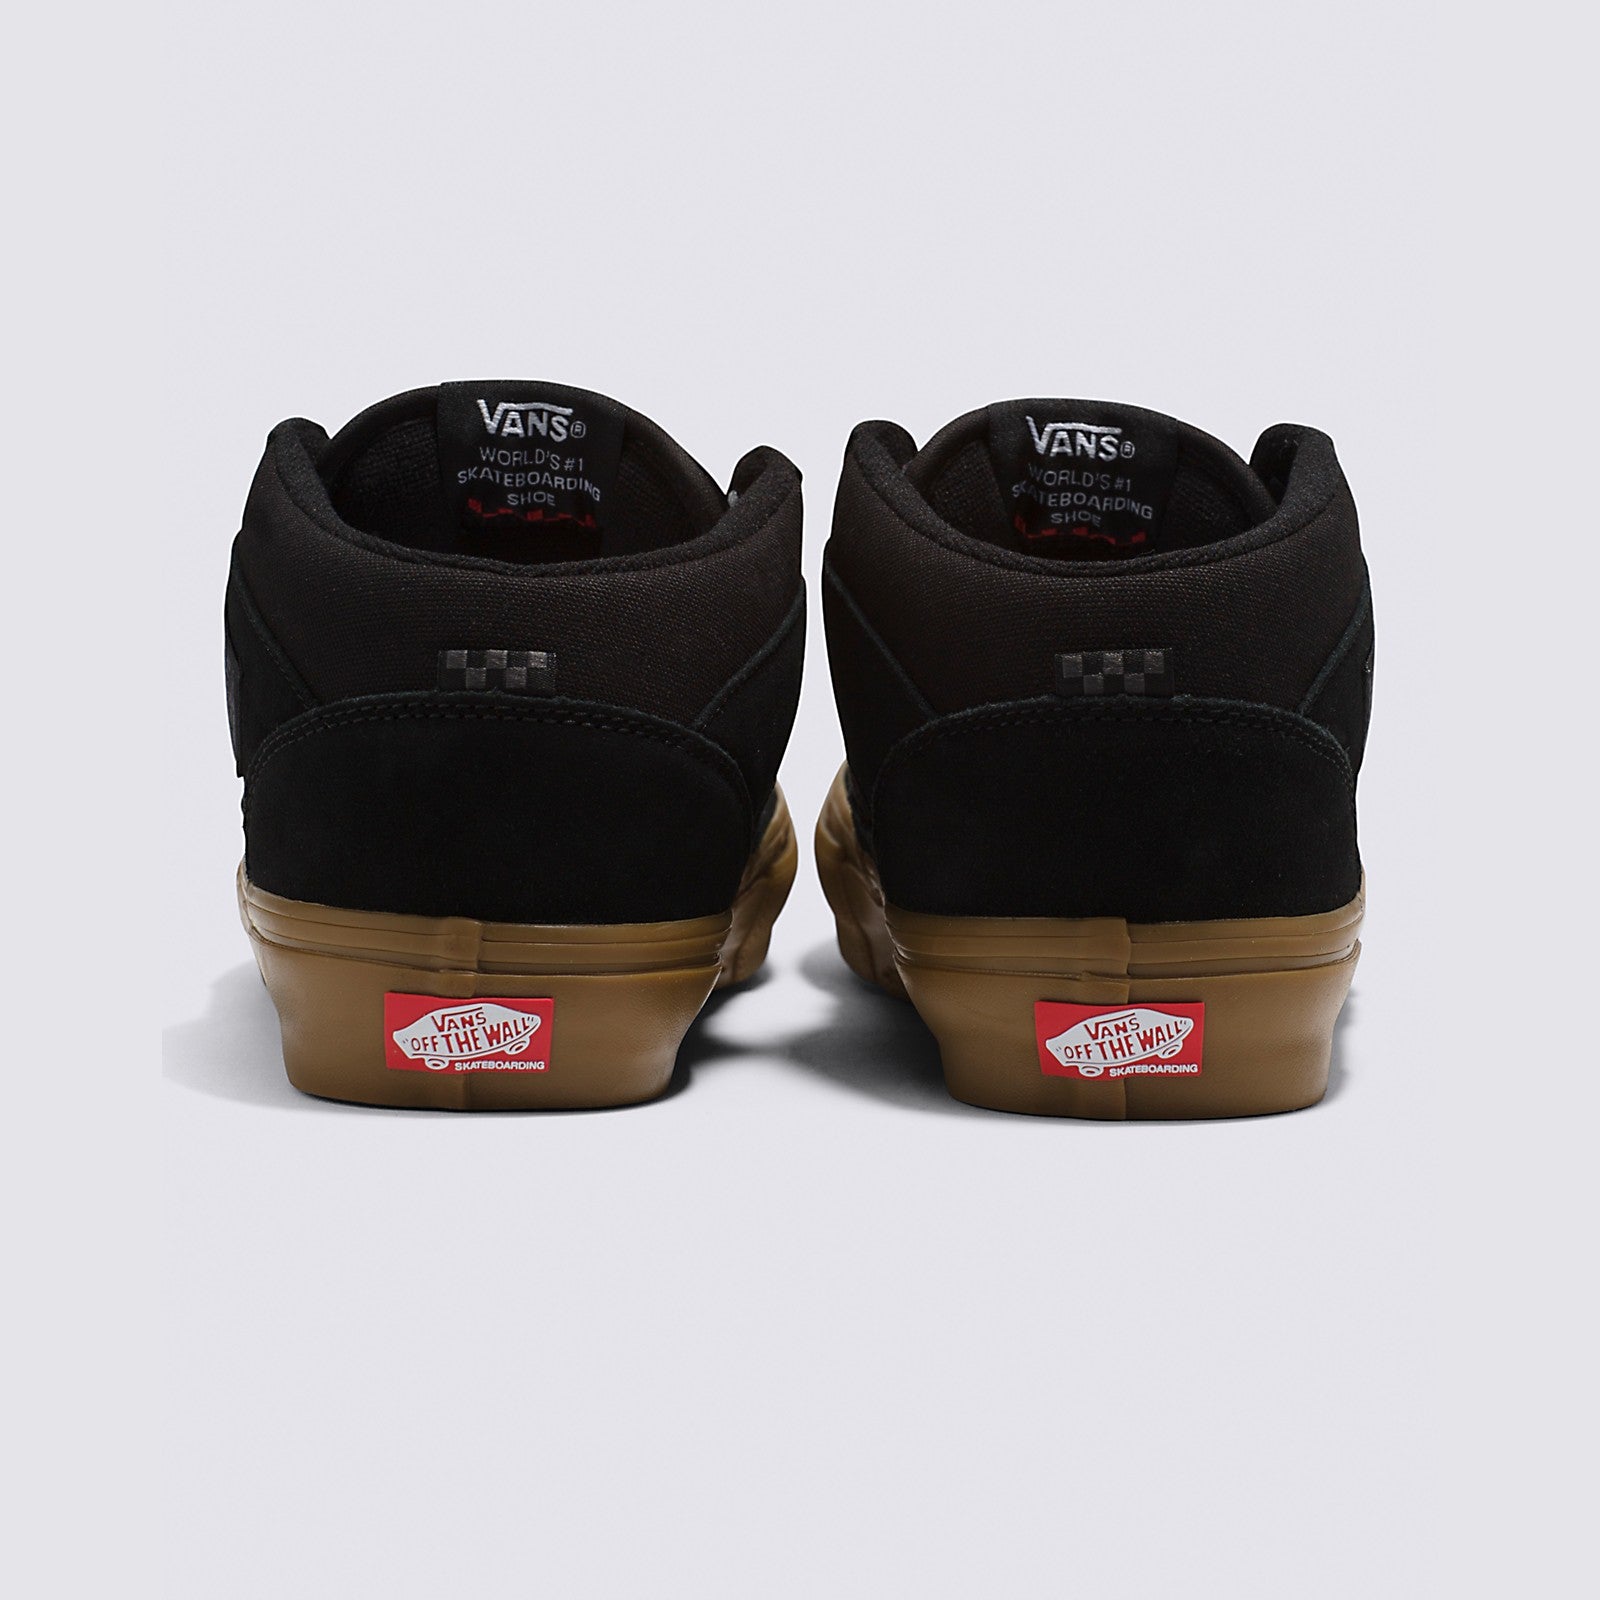 Black/Gum Skate Half Cab Vans Skate Shoe Back